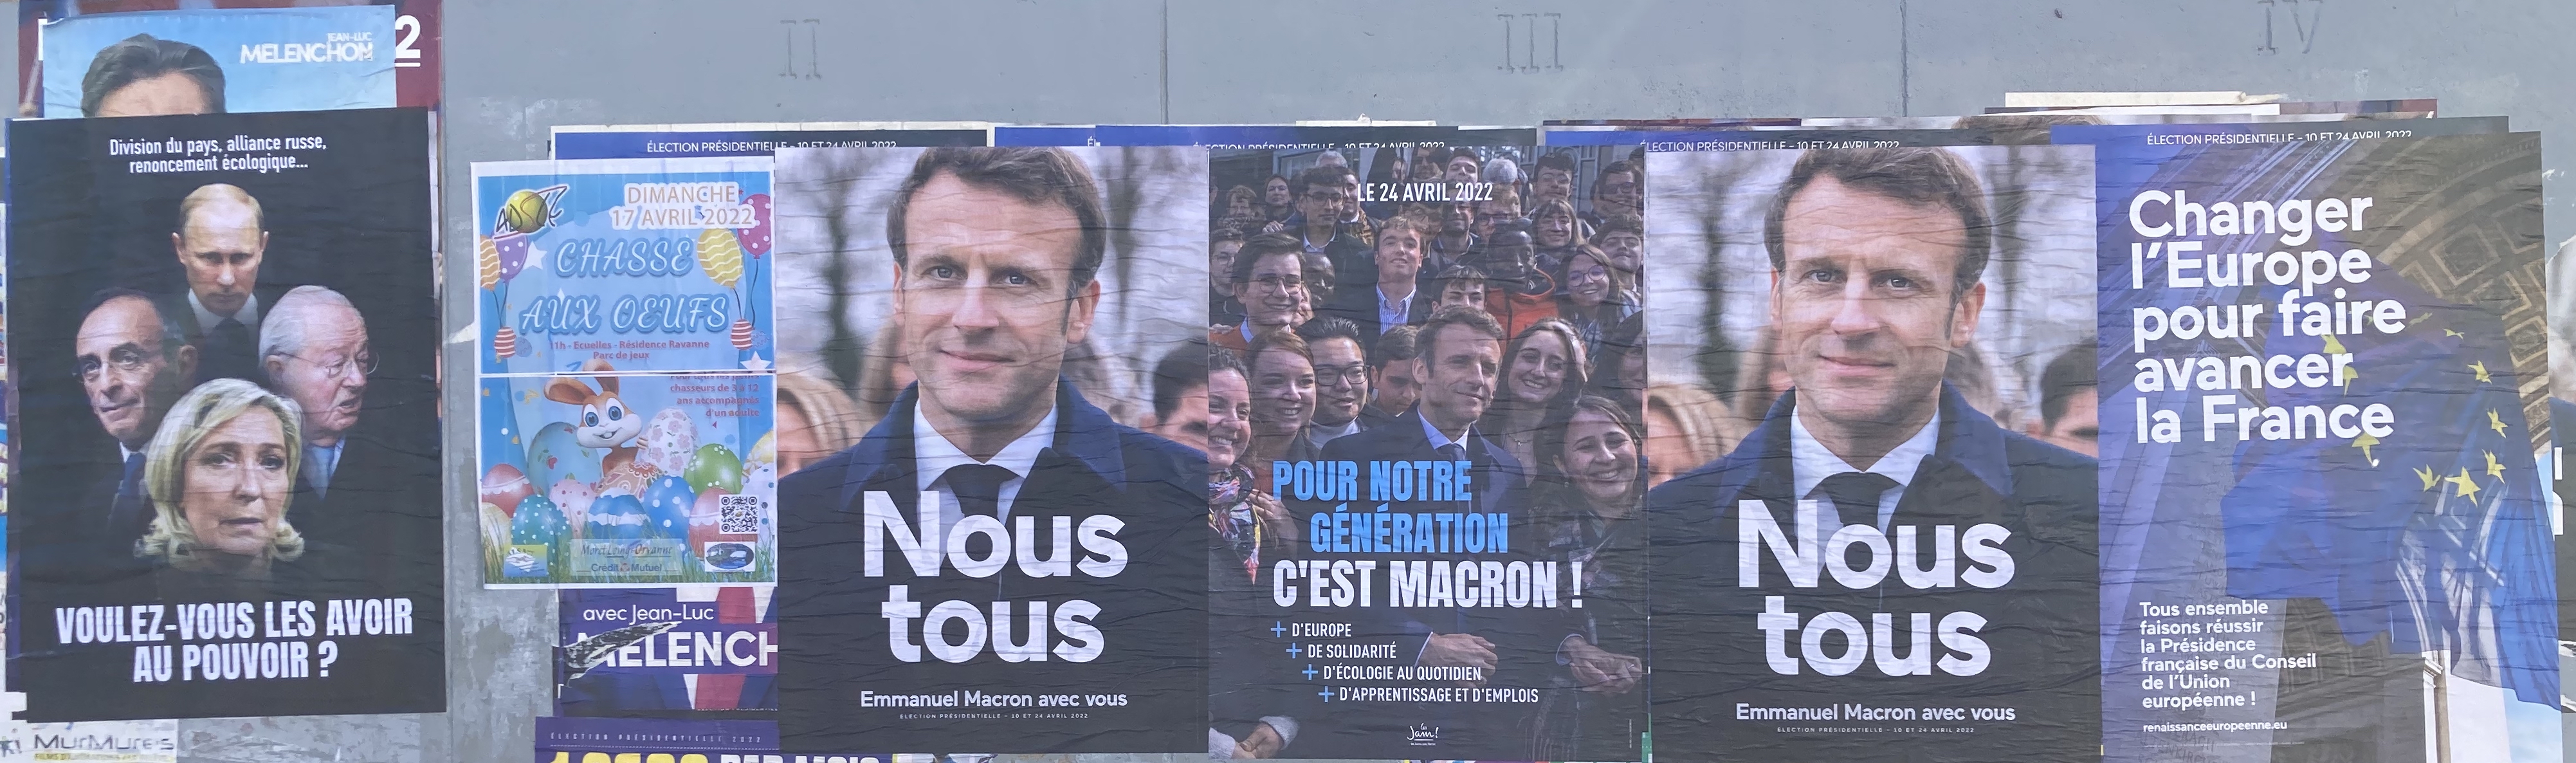 affichage libre pro Macron